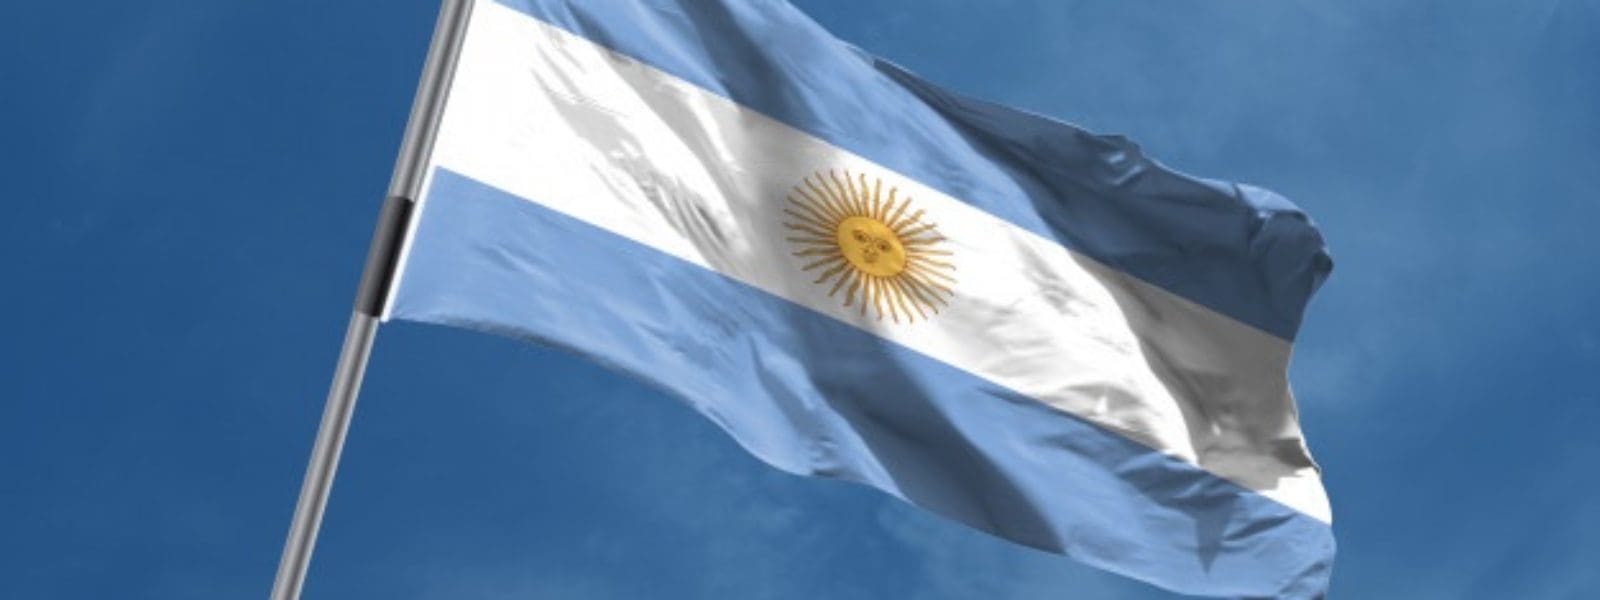 cropped bandera argentina ondeando 1498 53 1